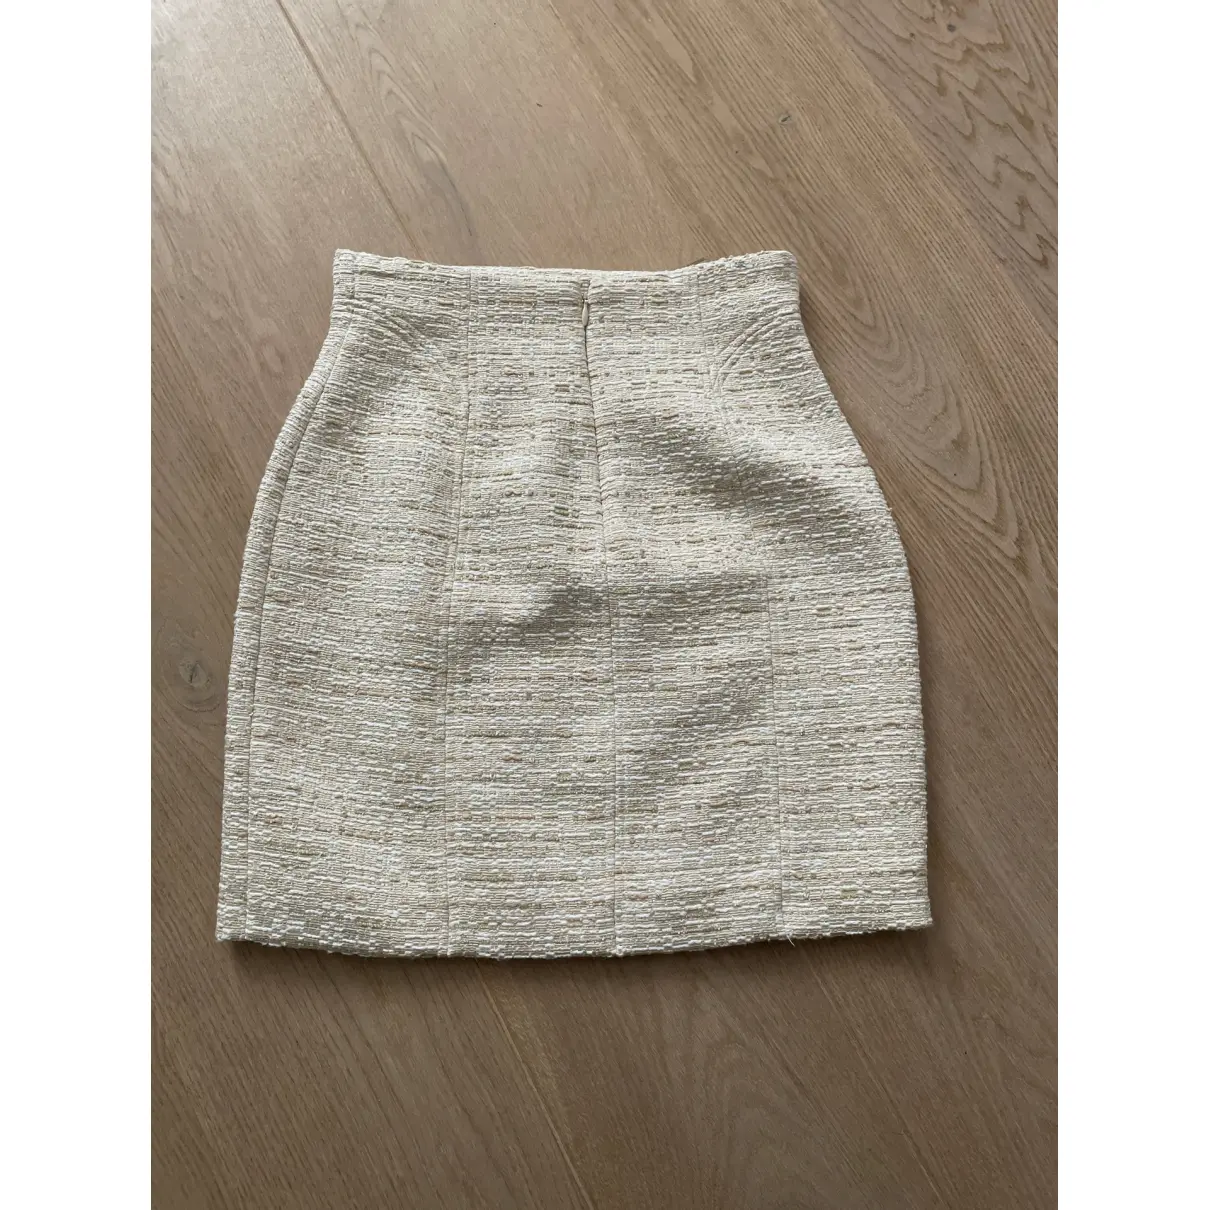 Buy La Semaine Mini skirt online